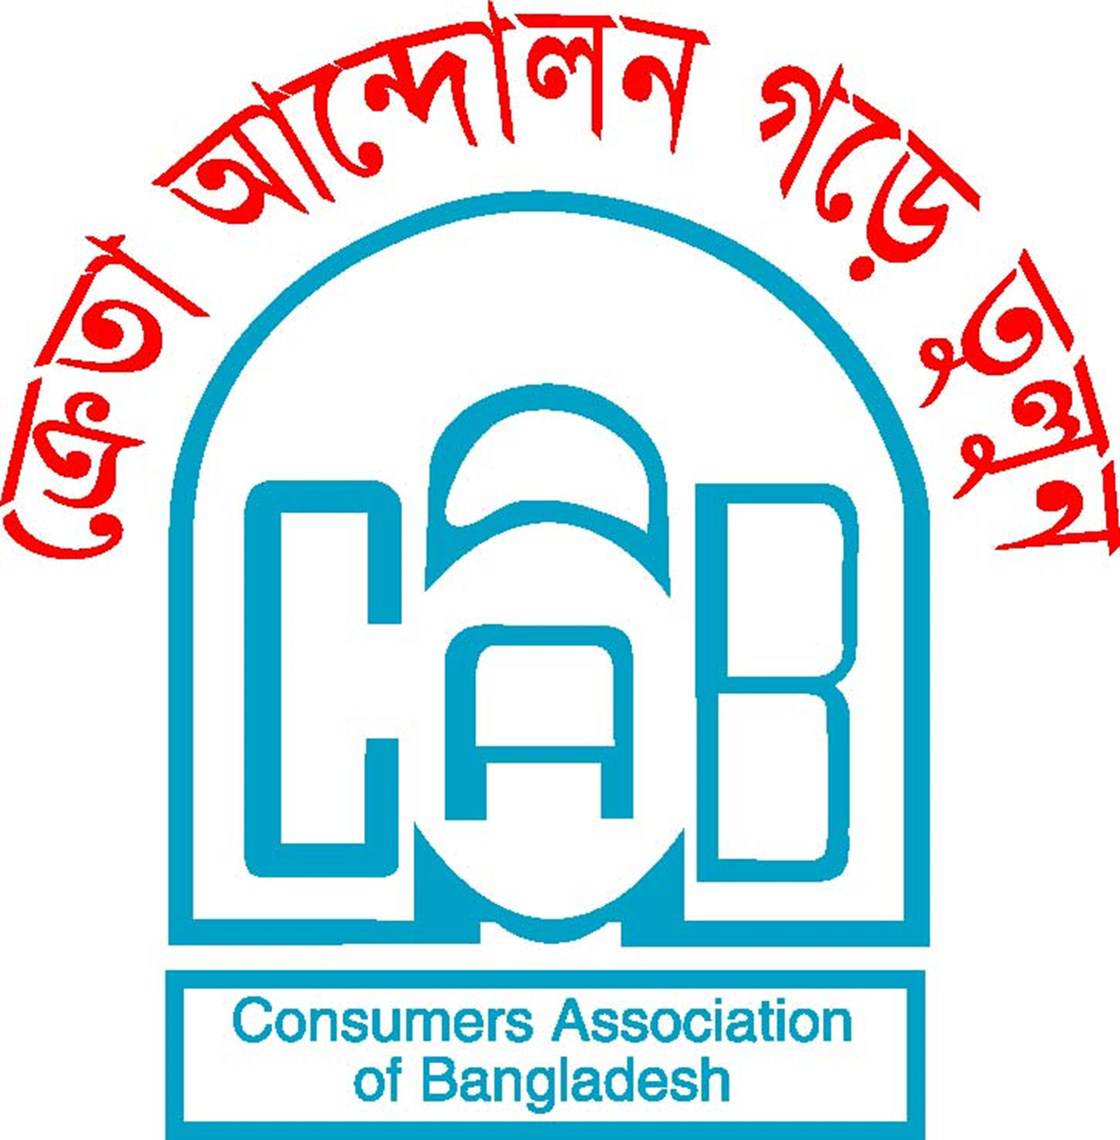 Consumers Association of Bangladesh (CAB)